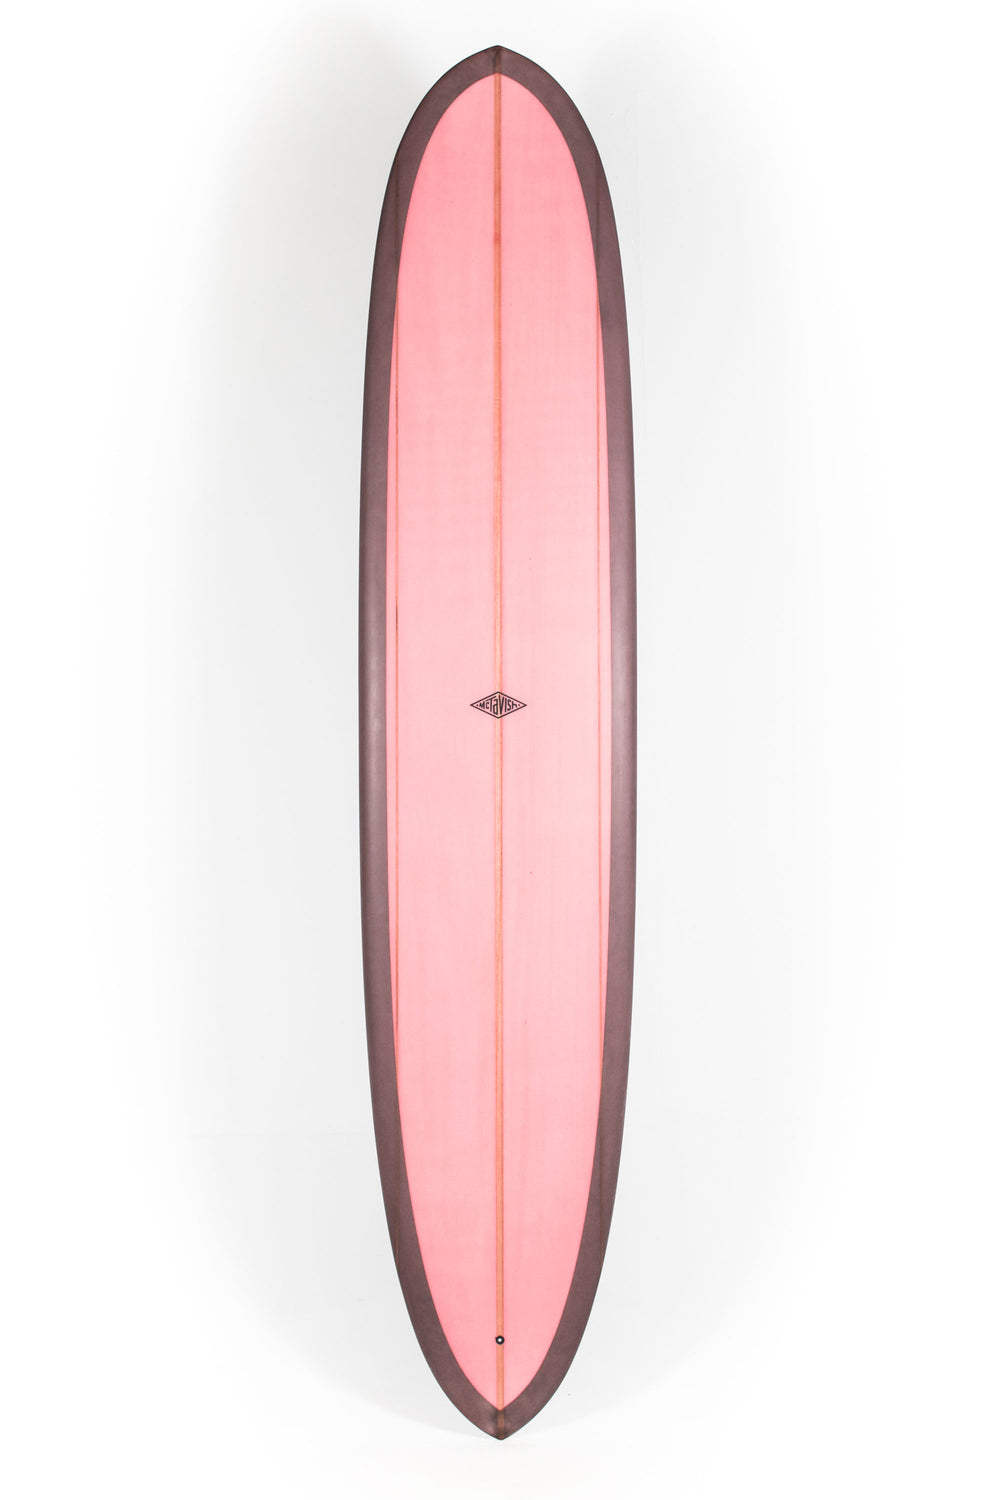 Pukas Surf Shop - McTavish Surfboard - PINNACLE by Bob McTavish - 9'6